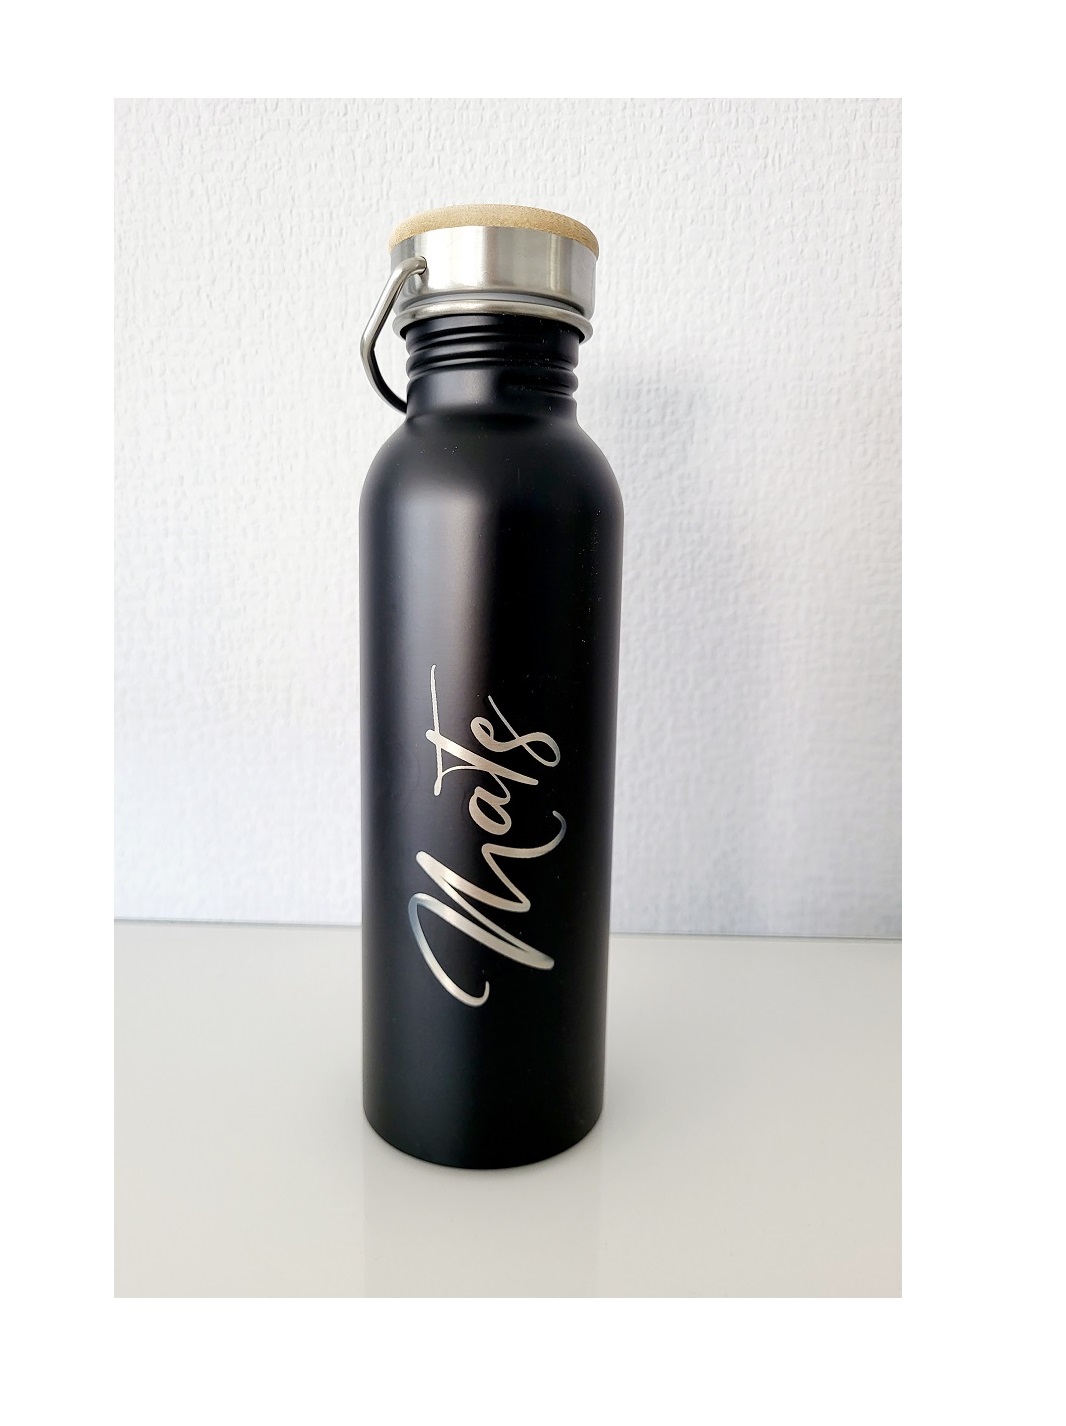 Edelstahlflasche Flasche aus Edelstahl / personalisierte Trinkflasche / für Zuhause und Unterwegs/ individuell gestaltet in 3 Farben